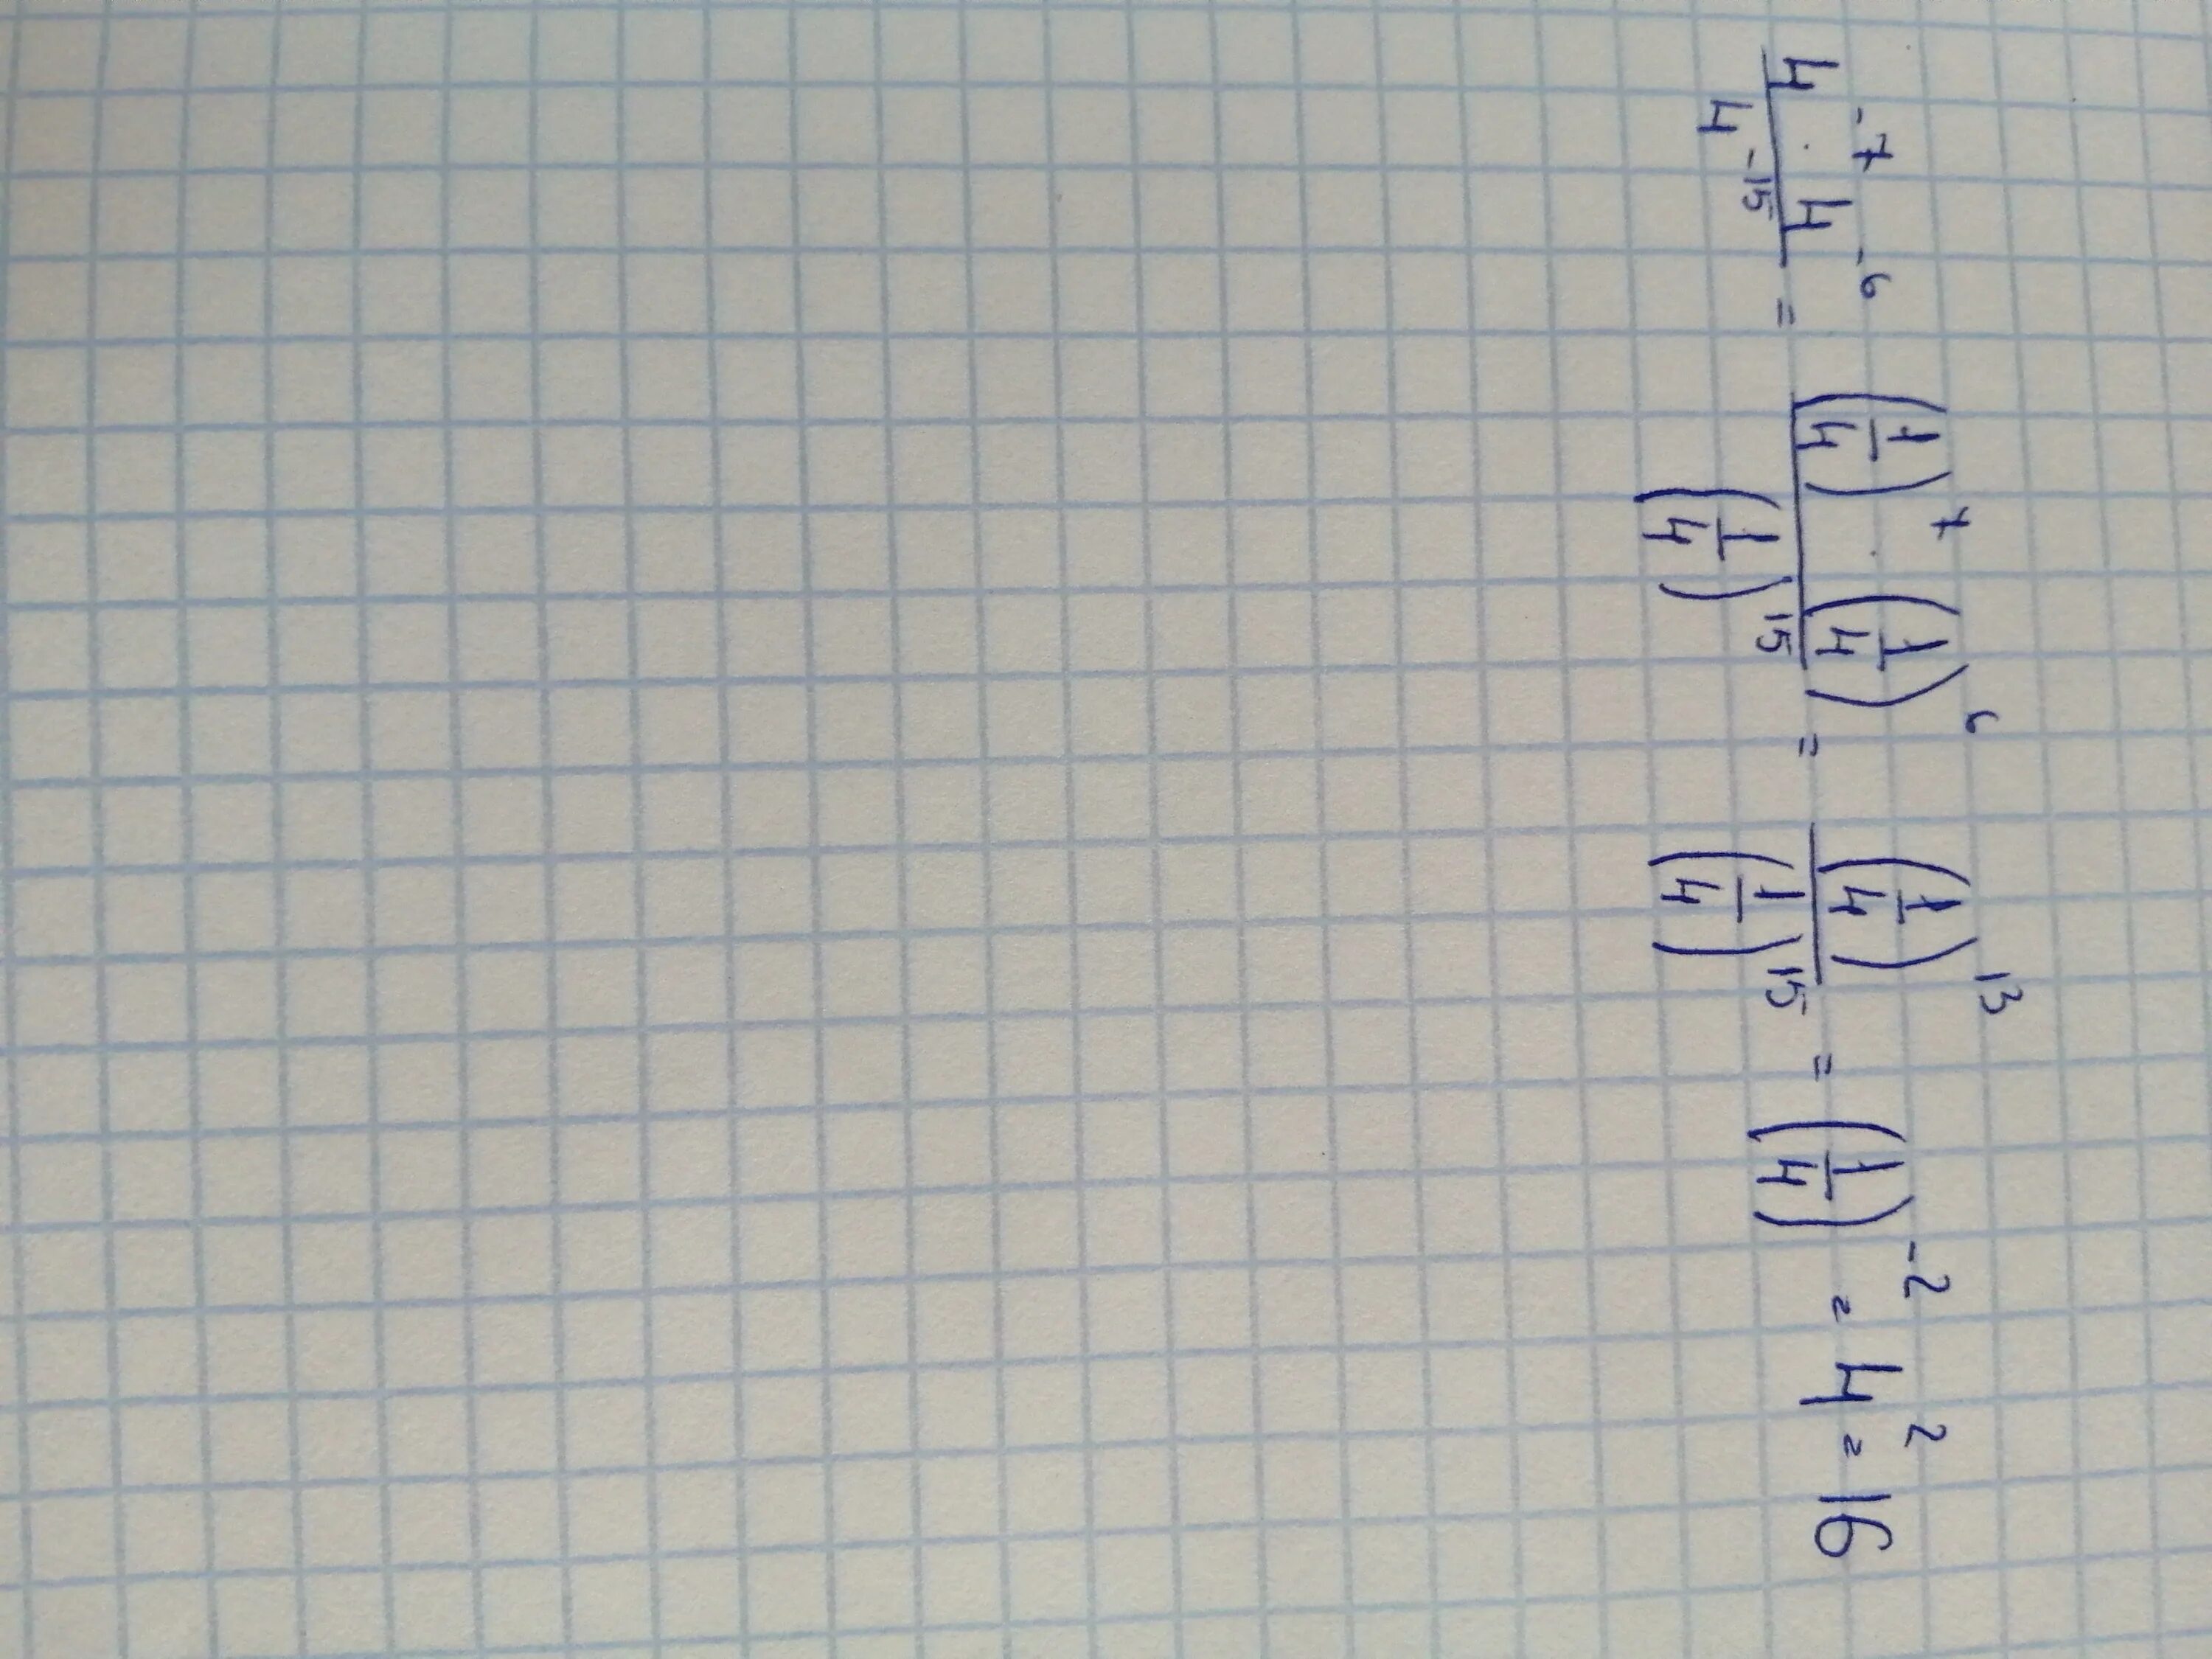 2 5 умножить на 4 0 6. А В 4 степени минус б в 4 степени. 4 В минус 2 степени. 16 Умножить на 4. 15 В минус 4 степени.